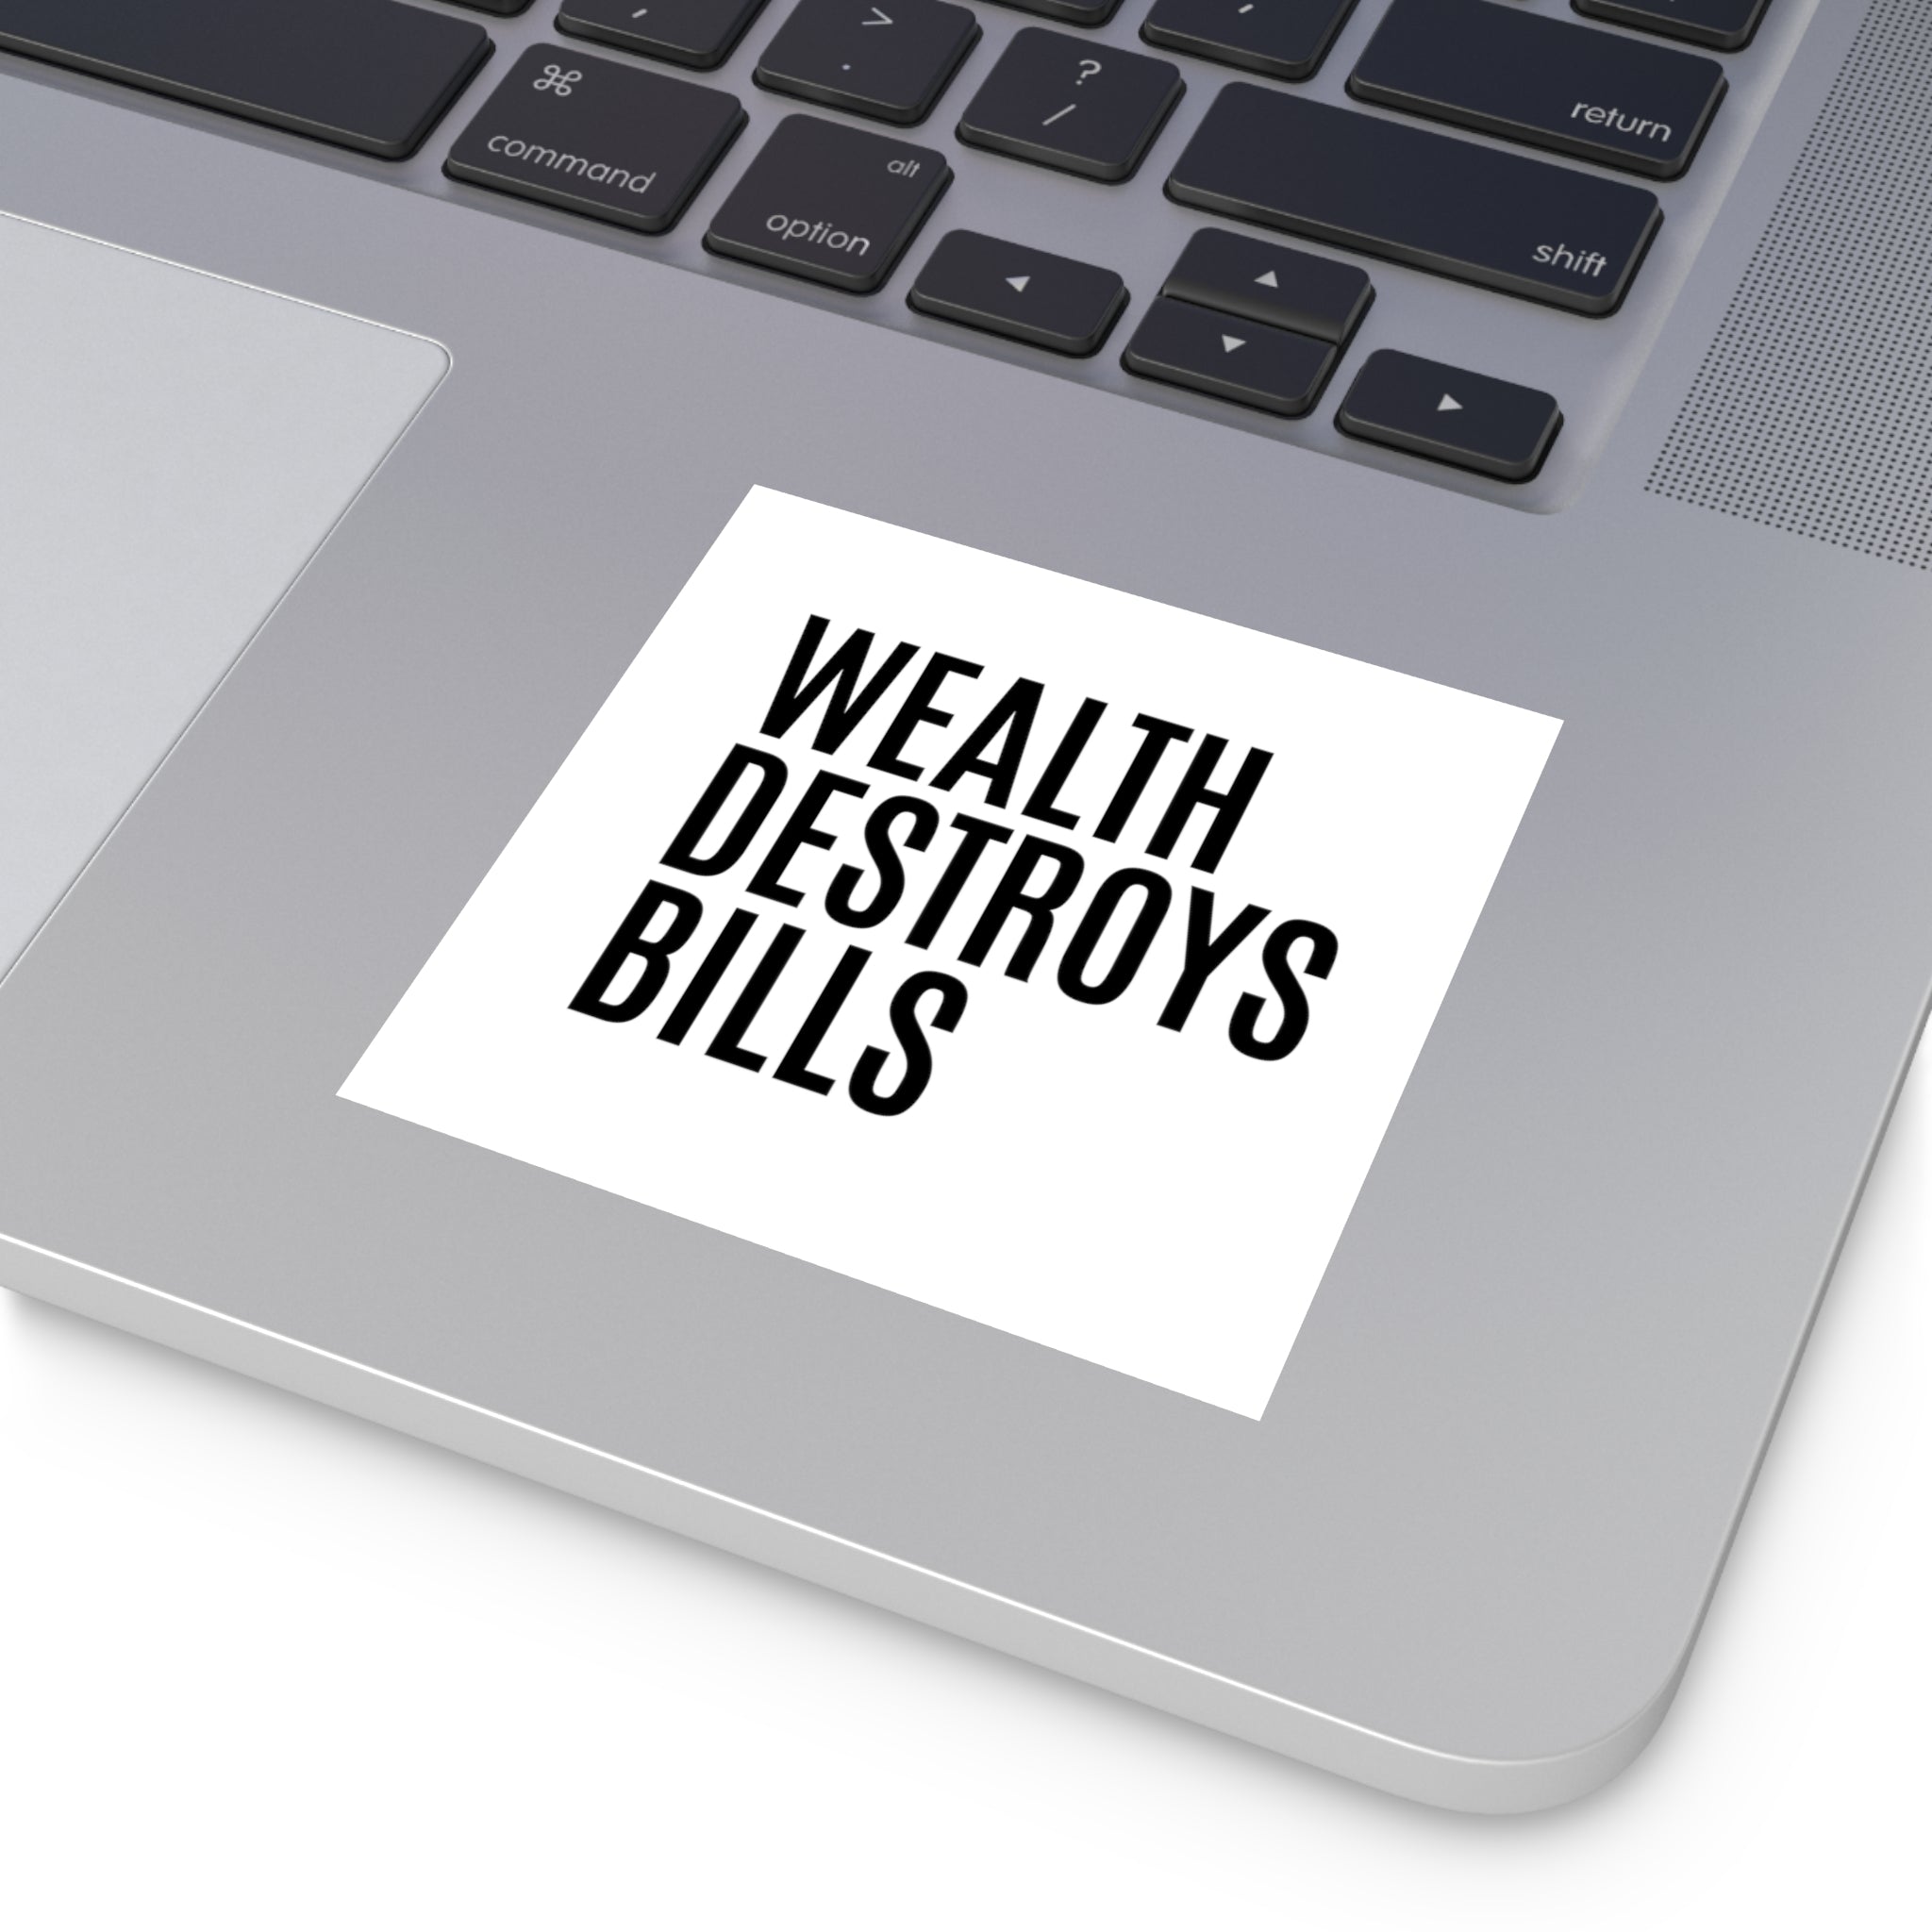 Shop true wealth quotes | Wealth destroys bills sticker at workspace on my laptop 